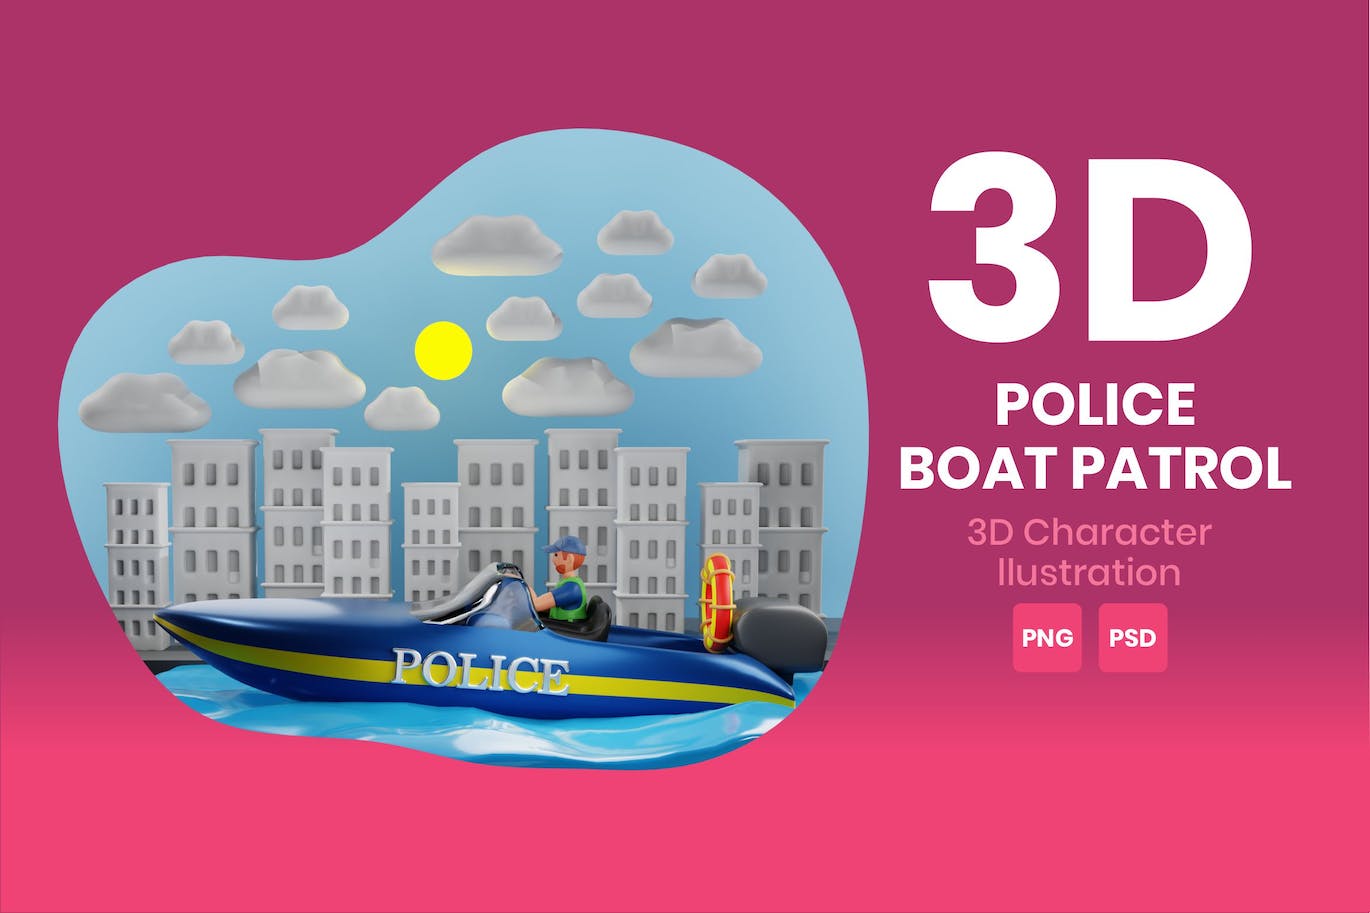 警艇巡逻3D角色插画素材 Police Boat Patrol 3D Character Illustration 图片素材 第1张